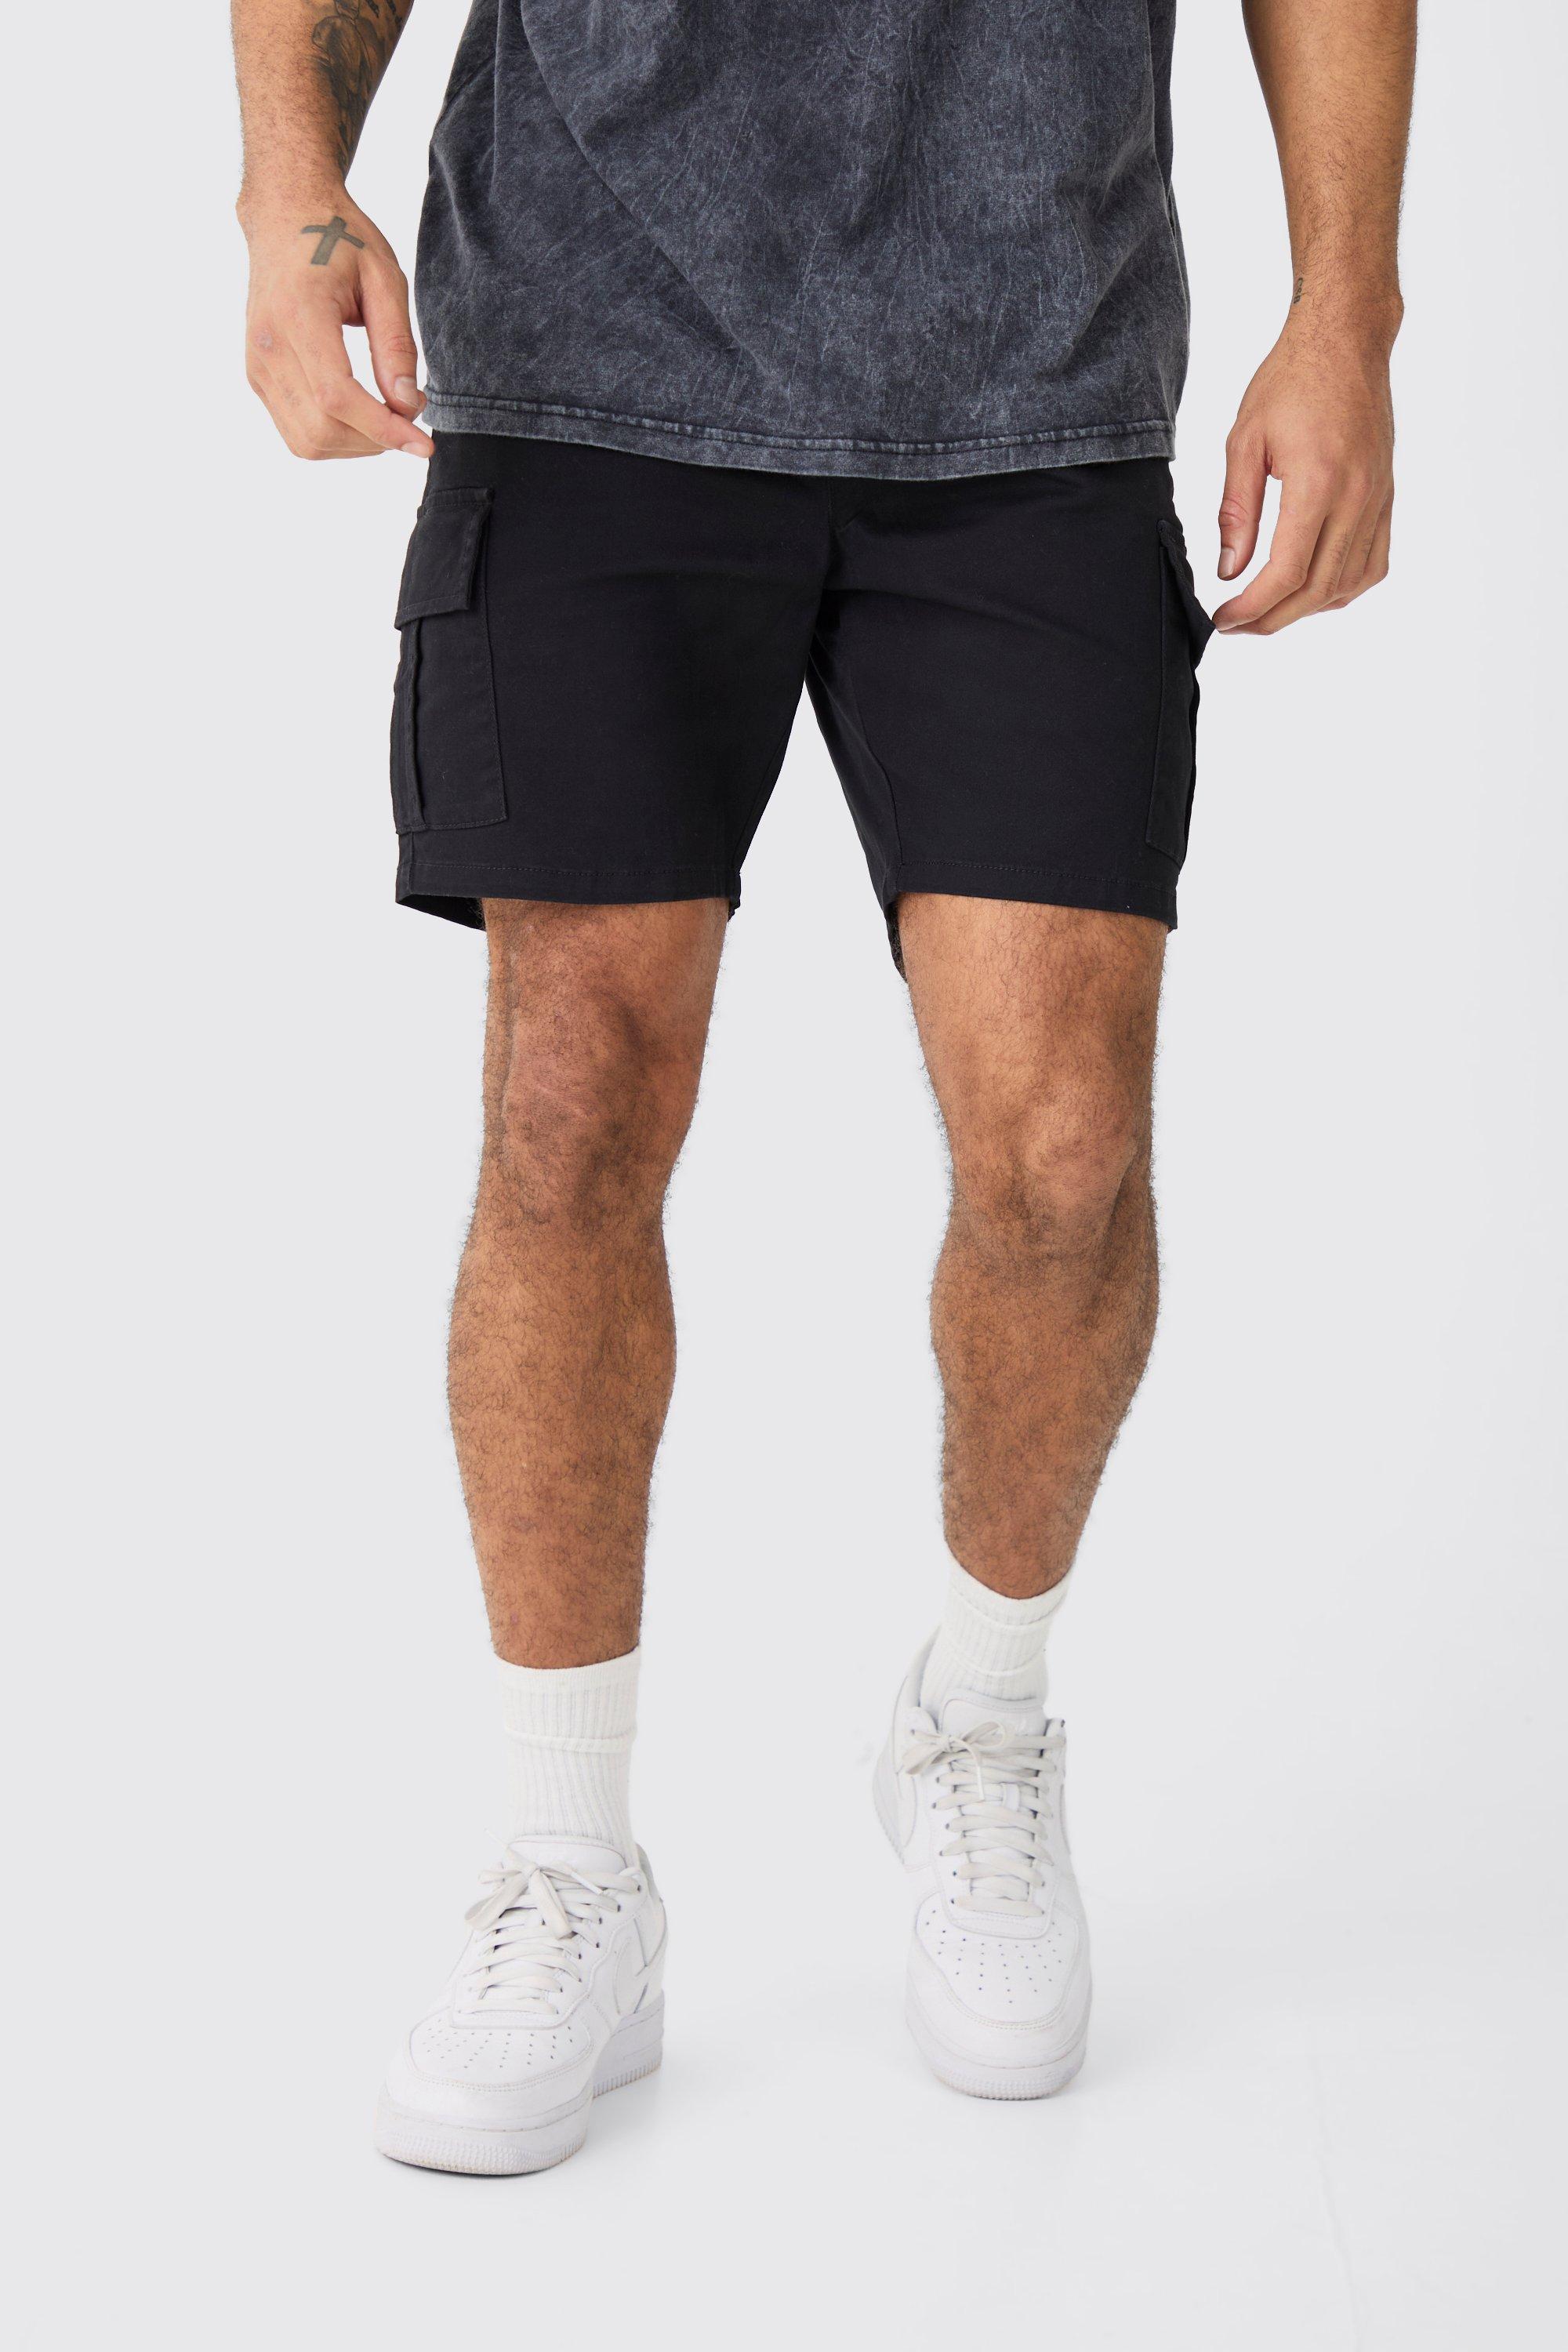 Image of Elastic Waist Black Skinny Fit Cargo Shorts, Nero